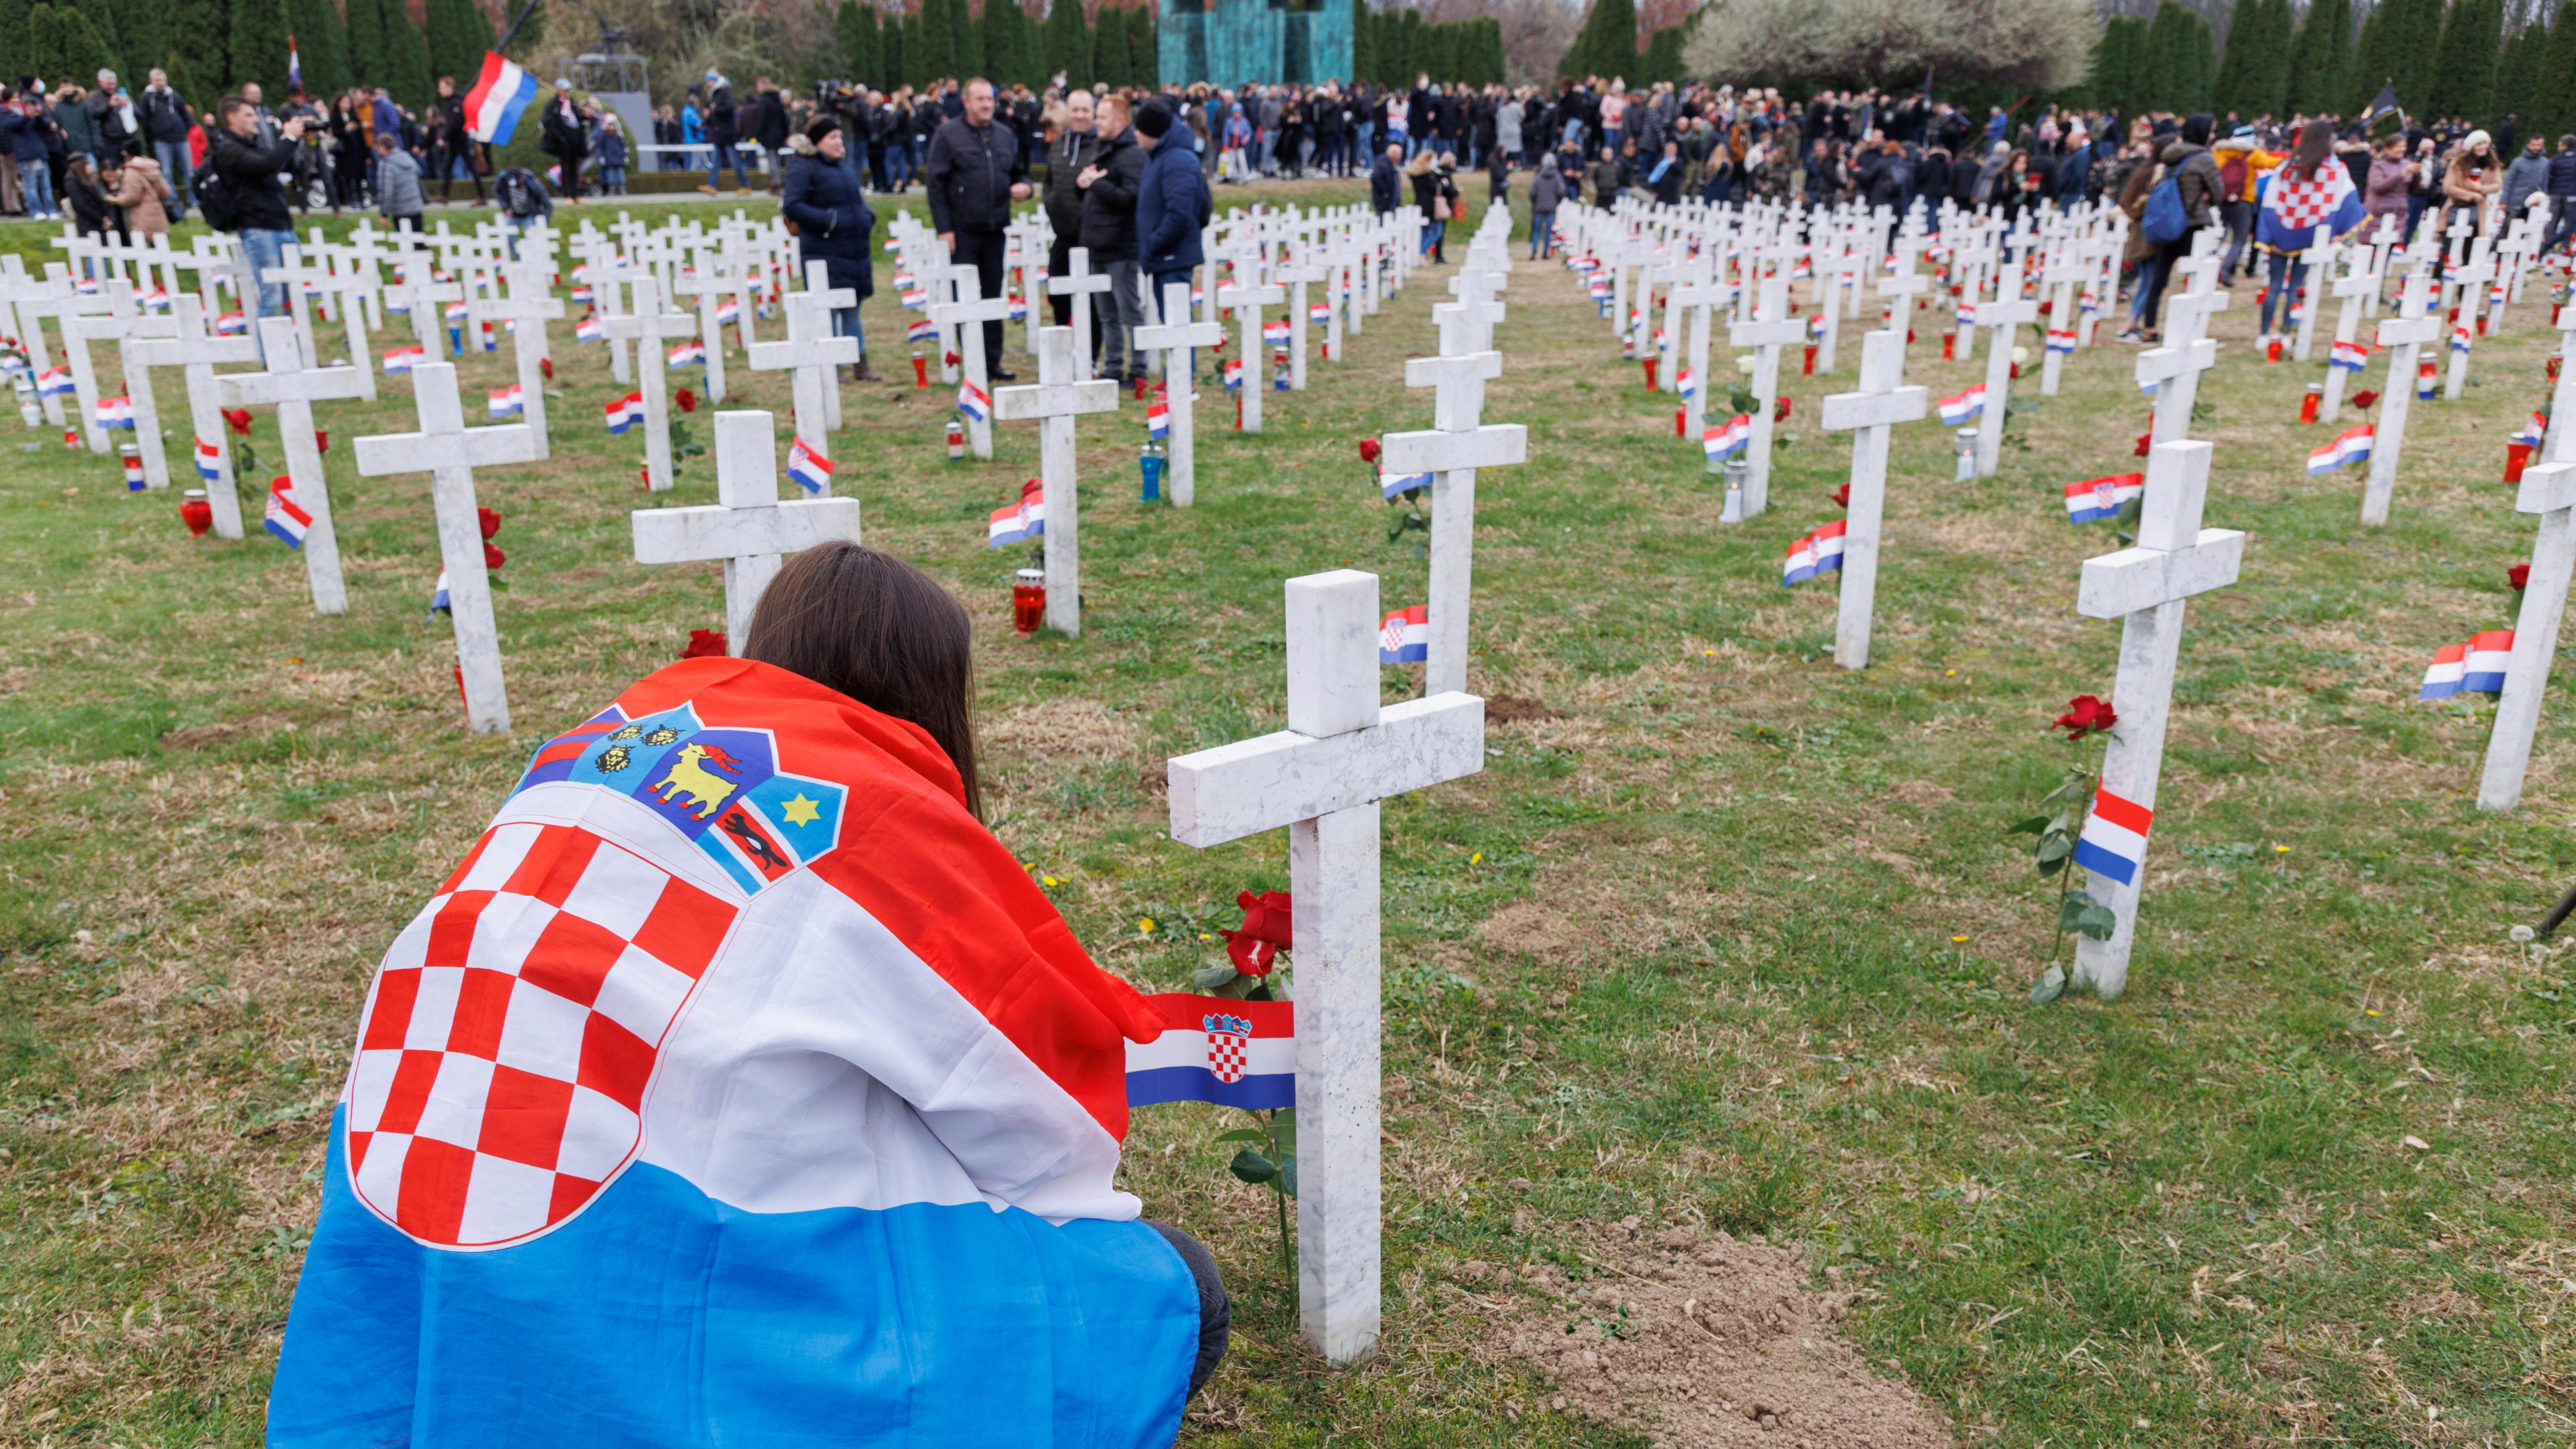 DIGITAL FRIDAY ” 自由のために闘ったクロアチア出身者が「ウクライナに思うこと」” インタビュー掲載